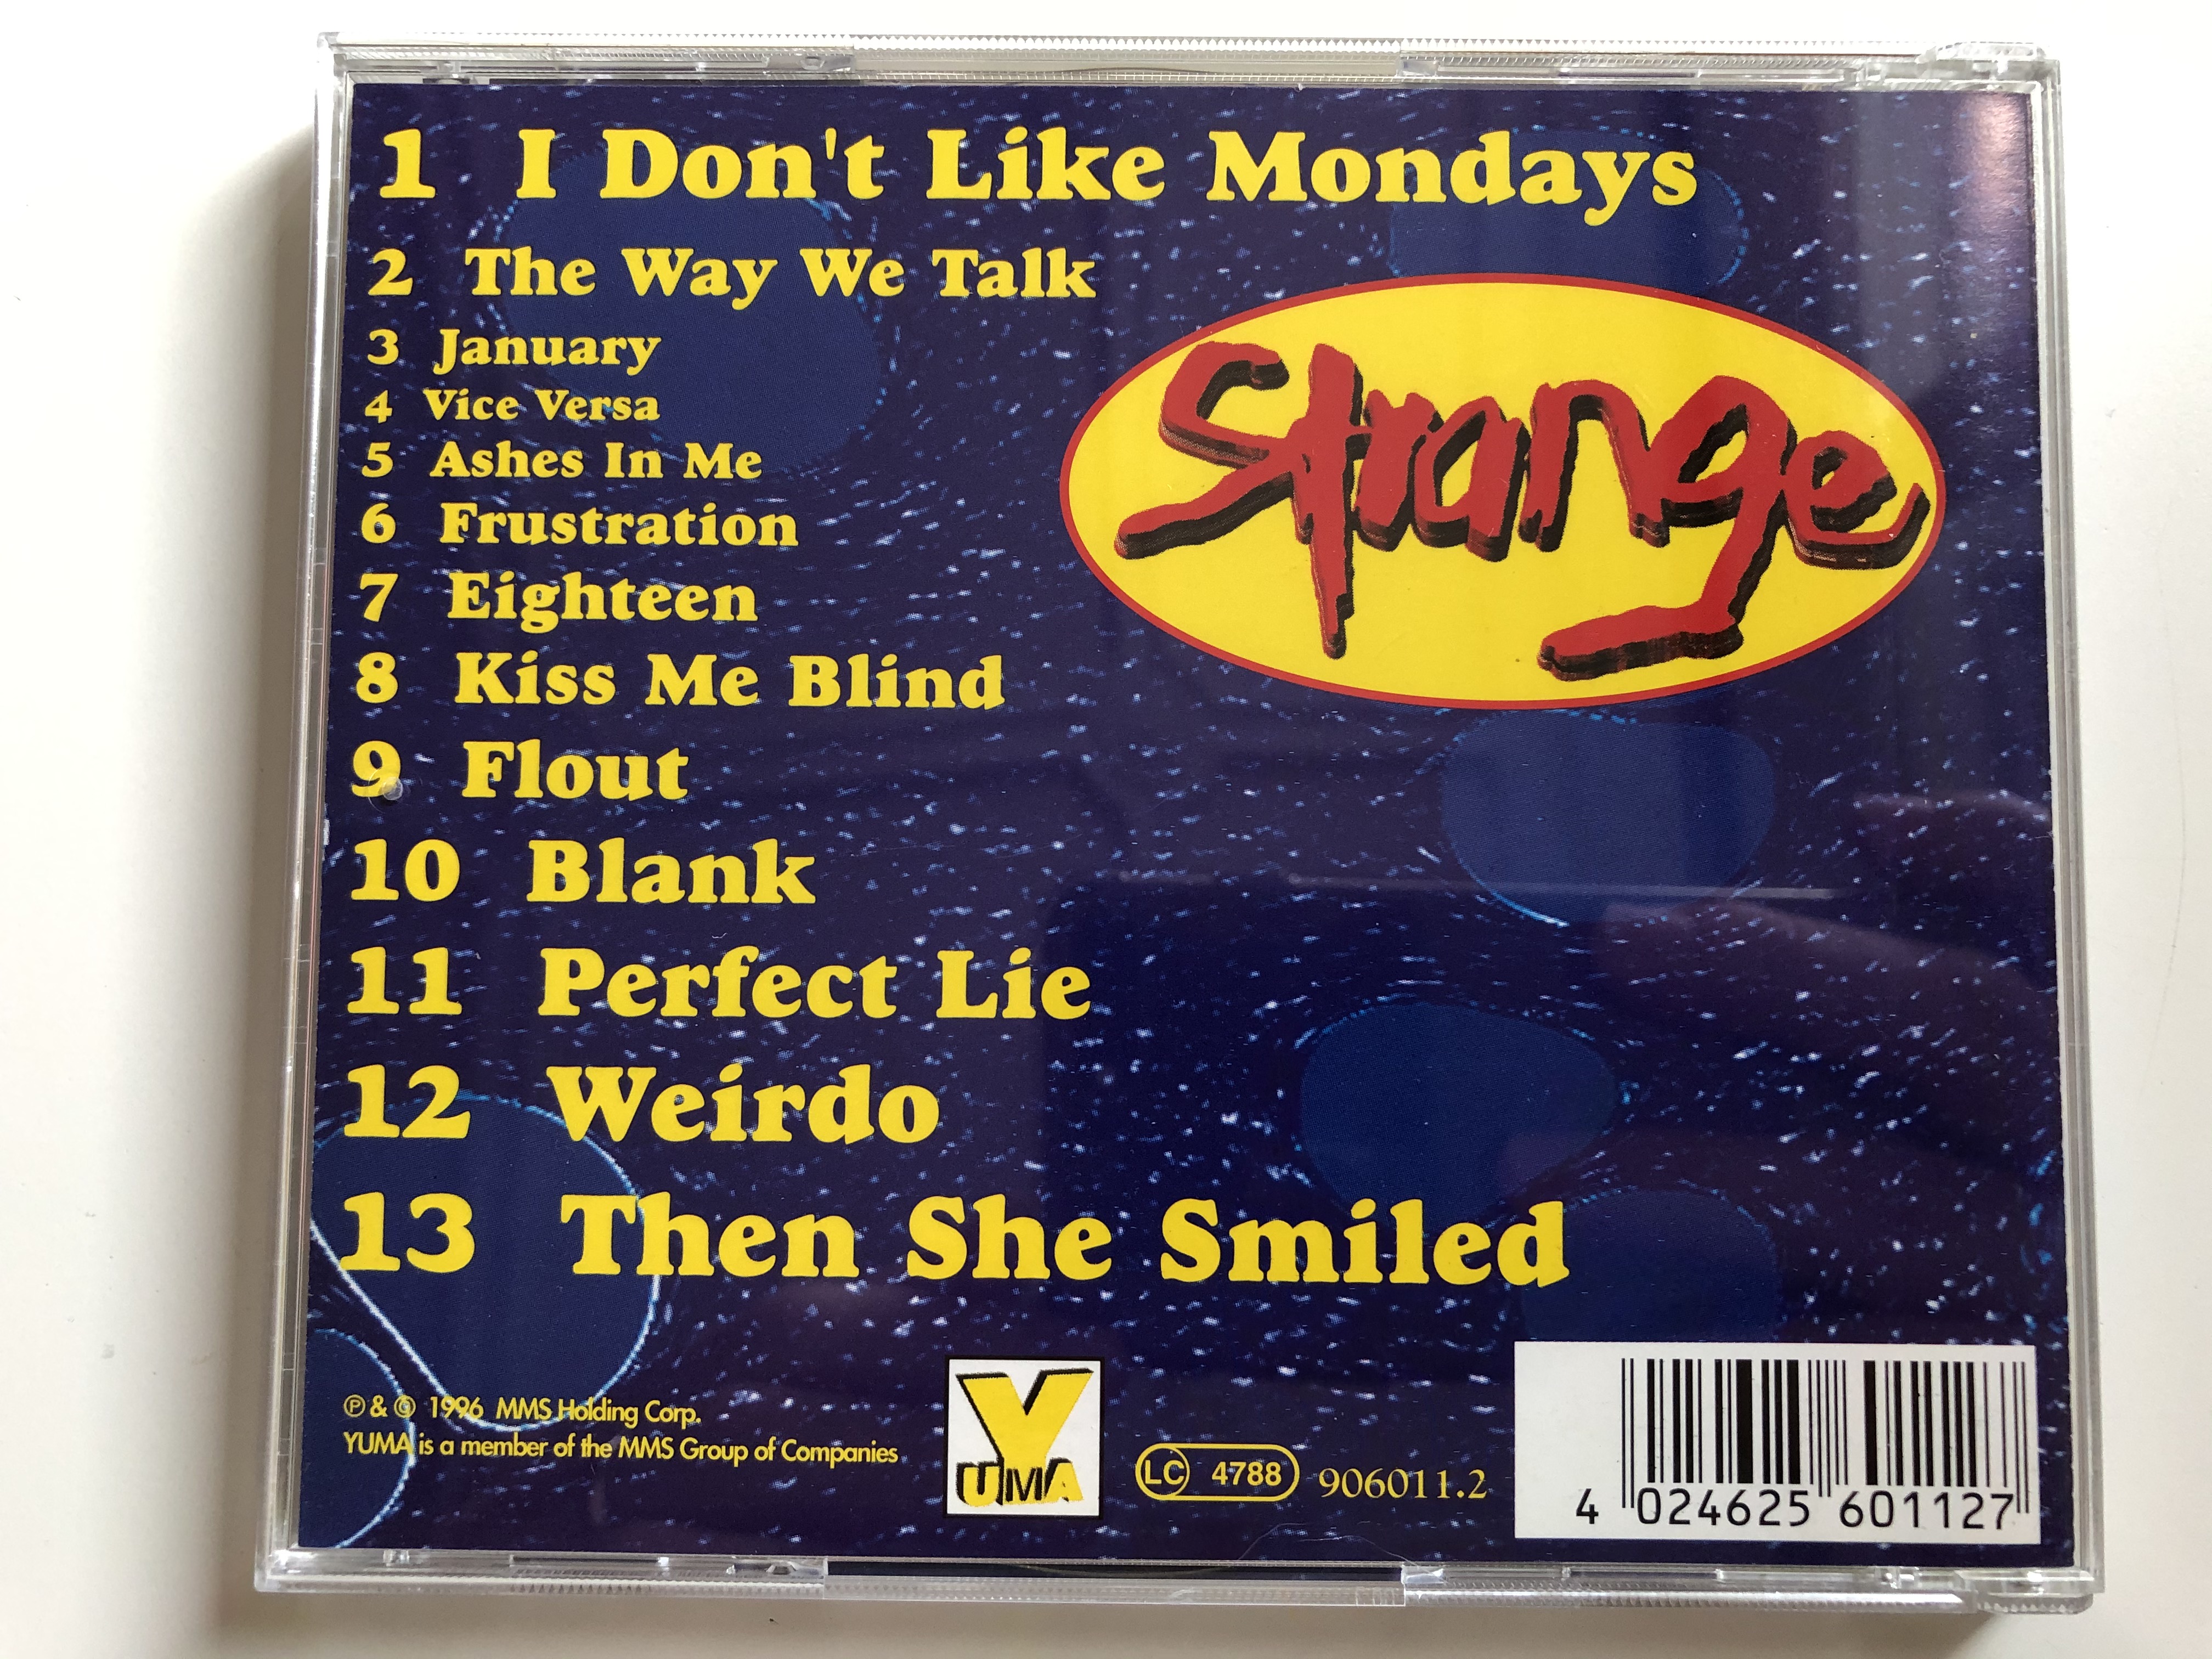 strange-mms-audio-cd-1996-906011-5-.jpg